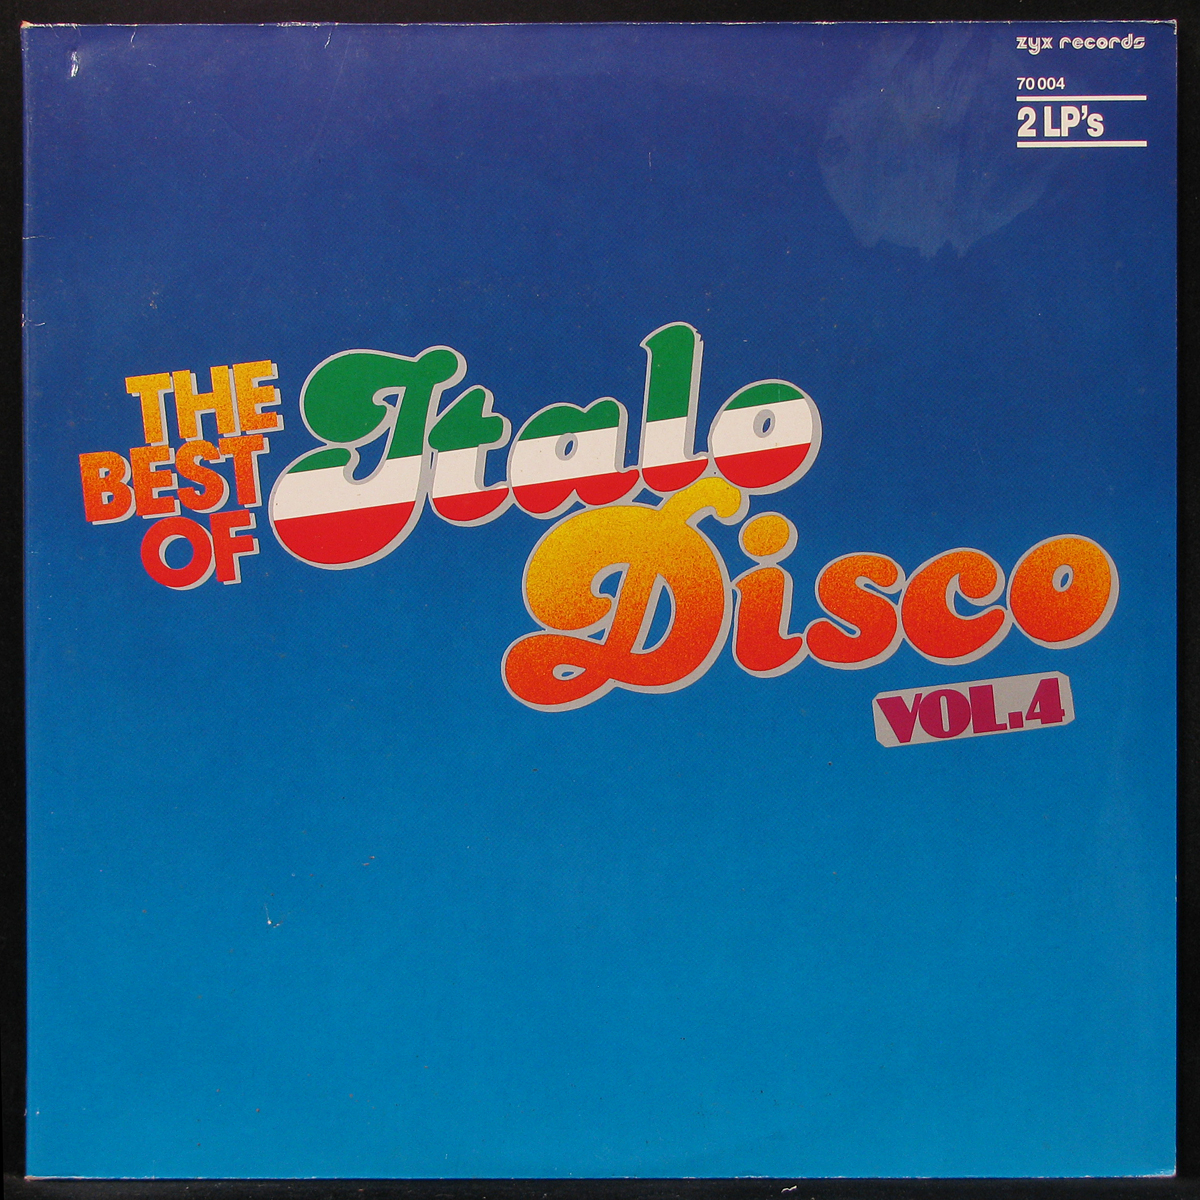 Альбом итало диско. The best of Italo Disco Vol 4 1985. Бест итало диско. The best of Italo Disco обложки. Итало диско пластинка.